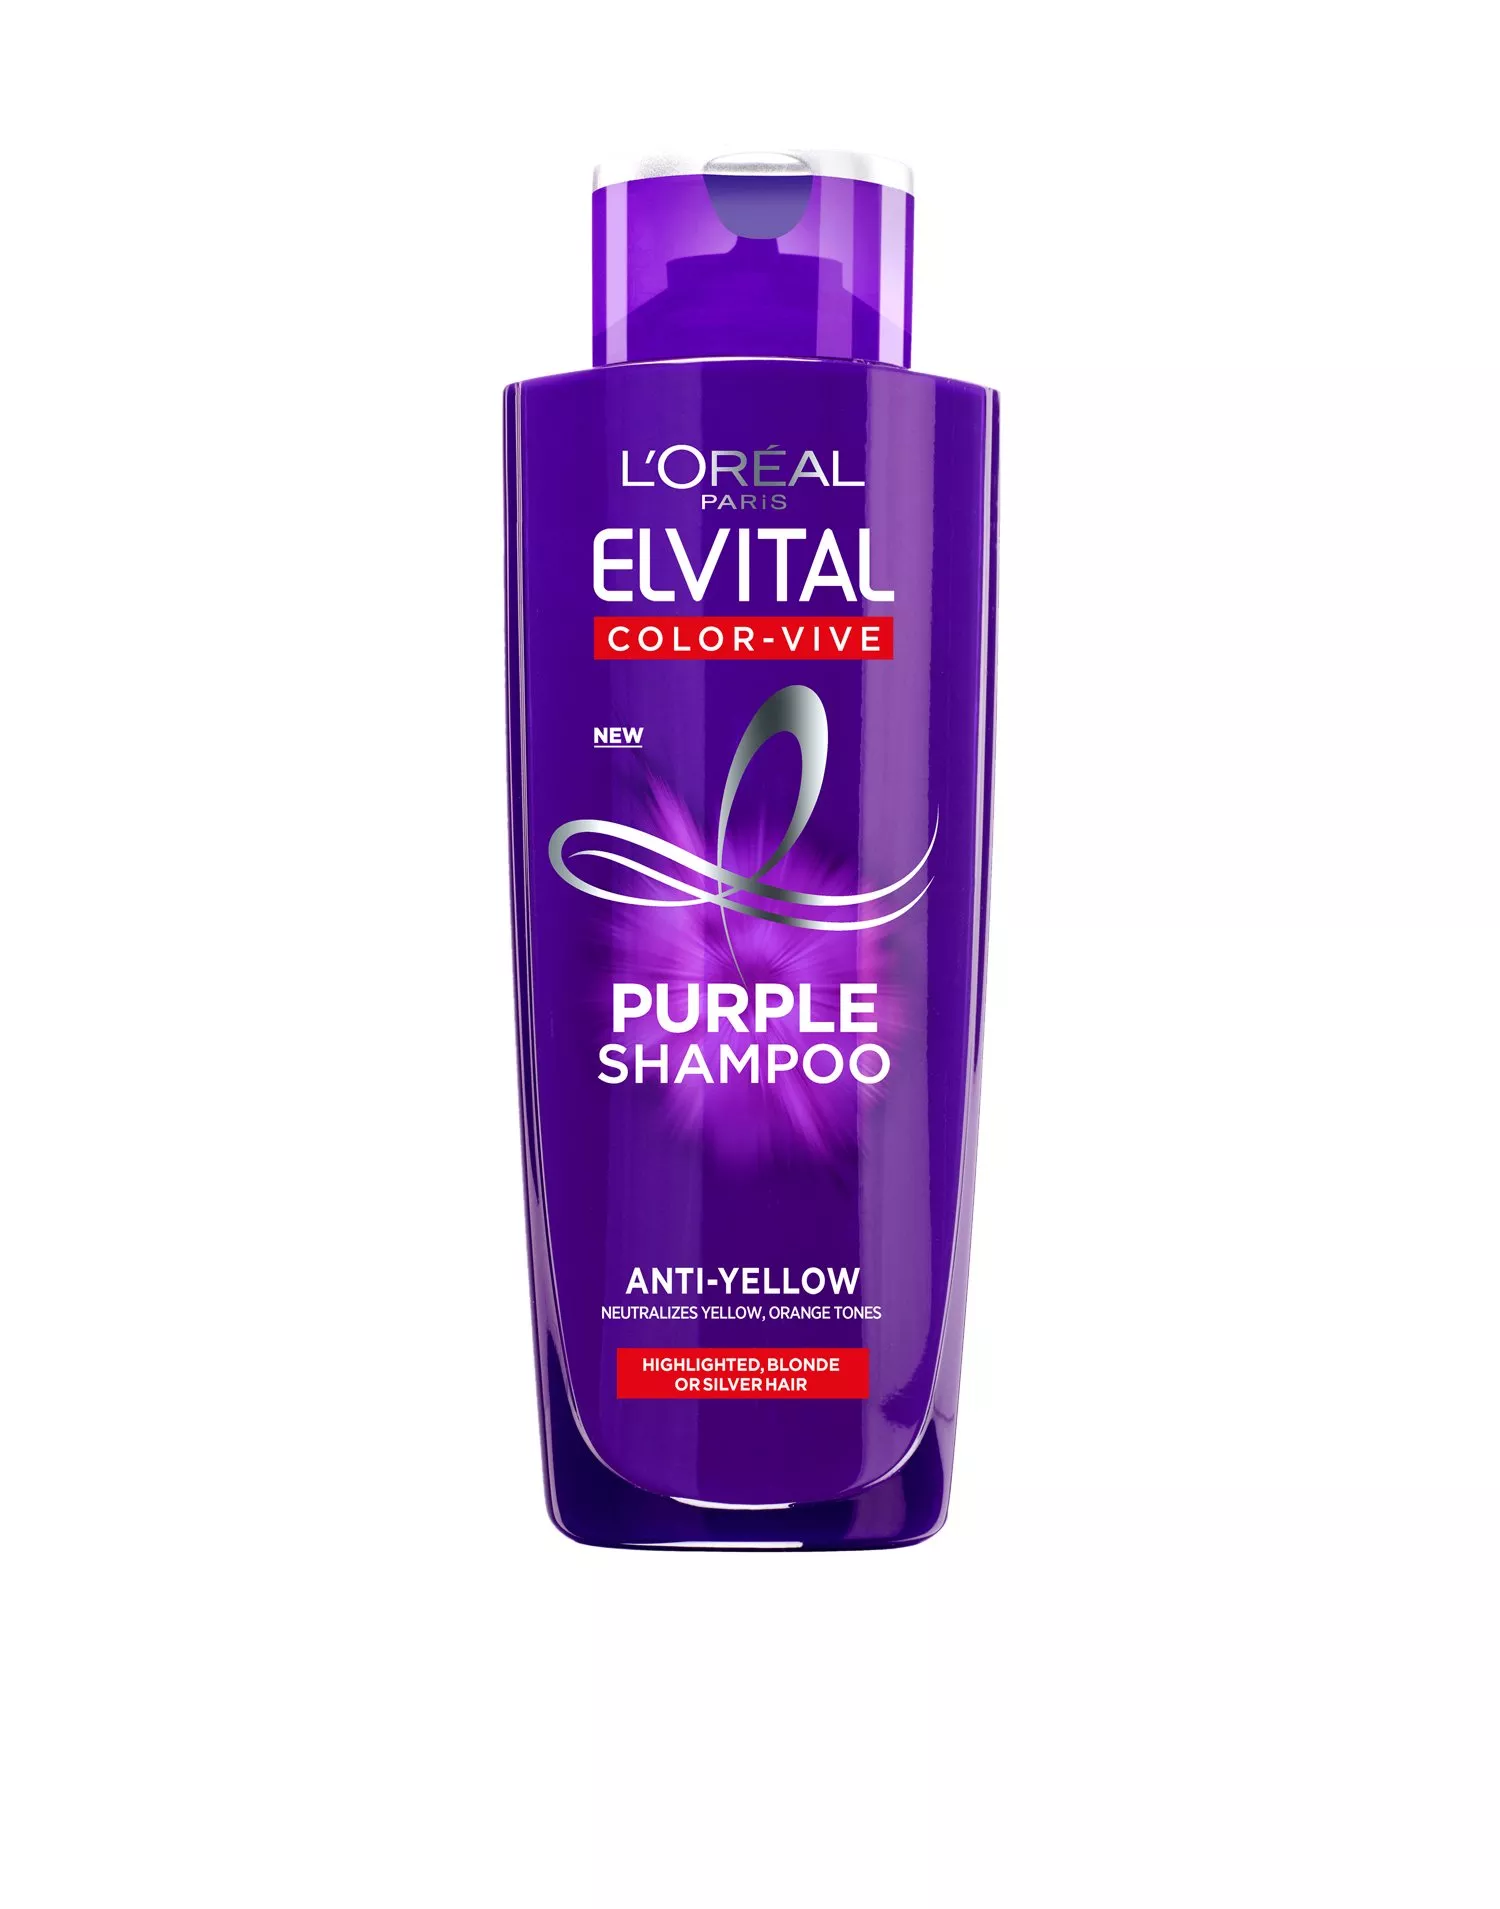 Calamity Tilbagekaldelse molester Buy Elvital Color Vive Silver Shampoo - Transparent | Nelly.com